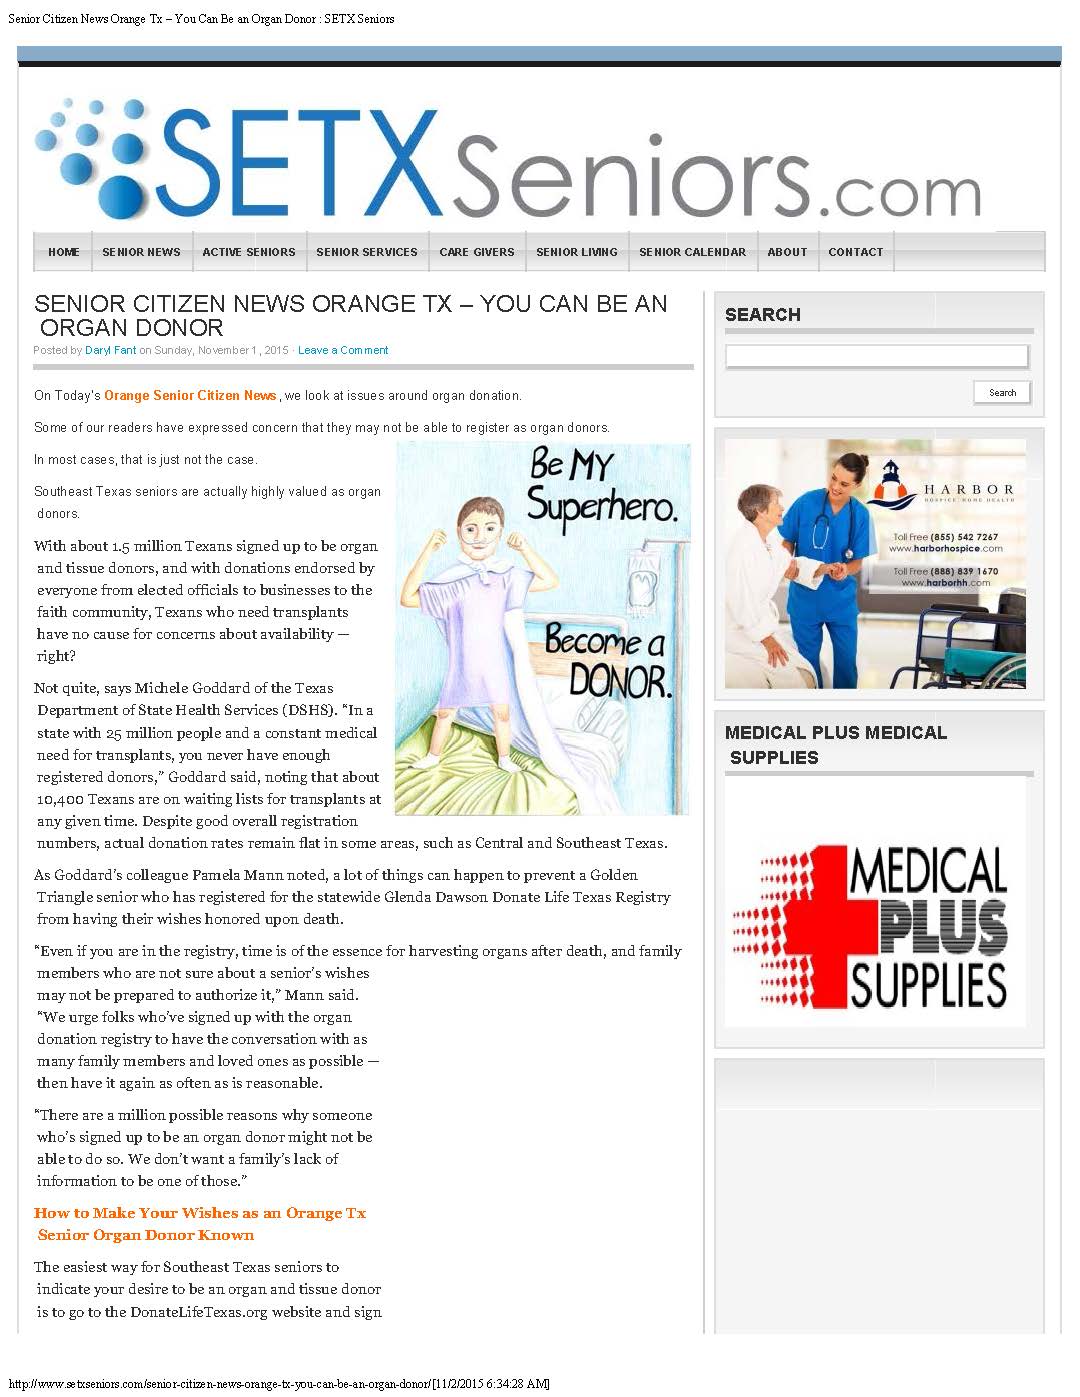 senior magazine Southeast Texas, senior advertising Southeast Texas, advertising agency Southeast Texas, advertising media Beaumont TX